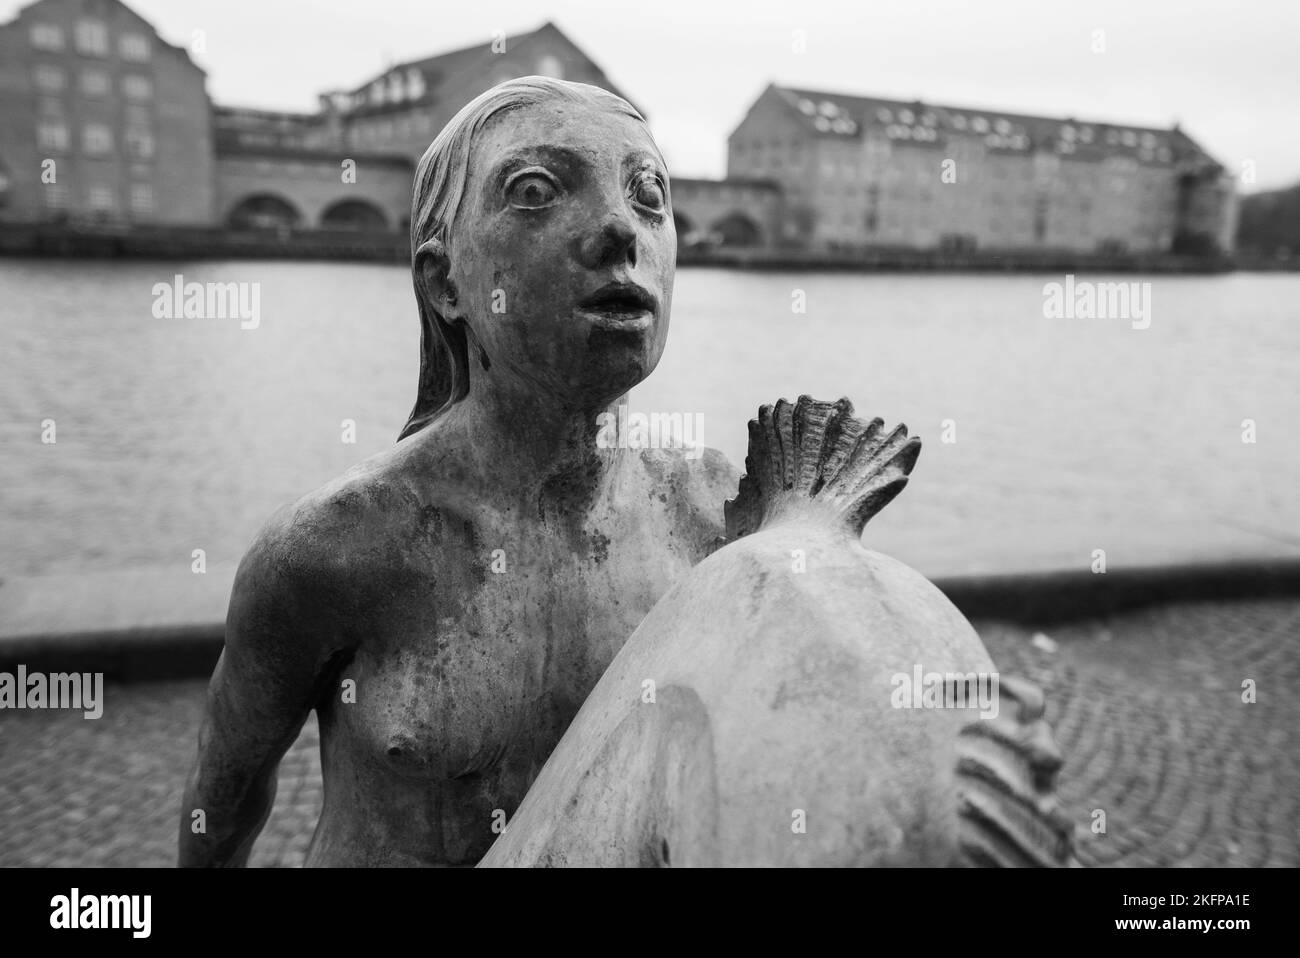 Statue de la Sirène (Carl-Nielsen) devant la Bibliothèque royale danoise de Copenhague, Danemark. Statue de la Sirène en diamant noir d'Anne Marie Carl-Nielsen. Banque D'Images